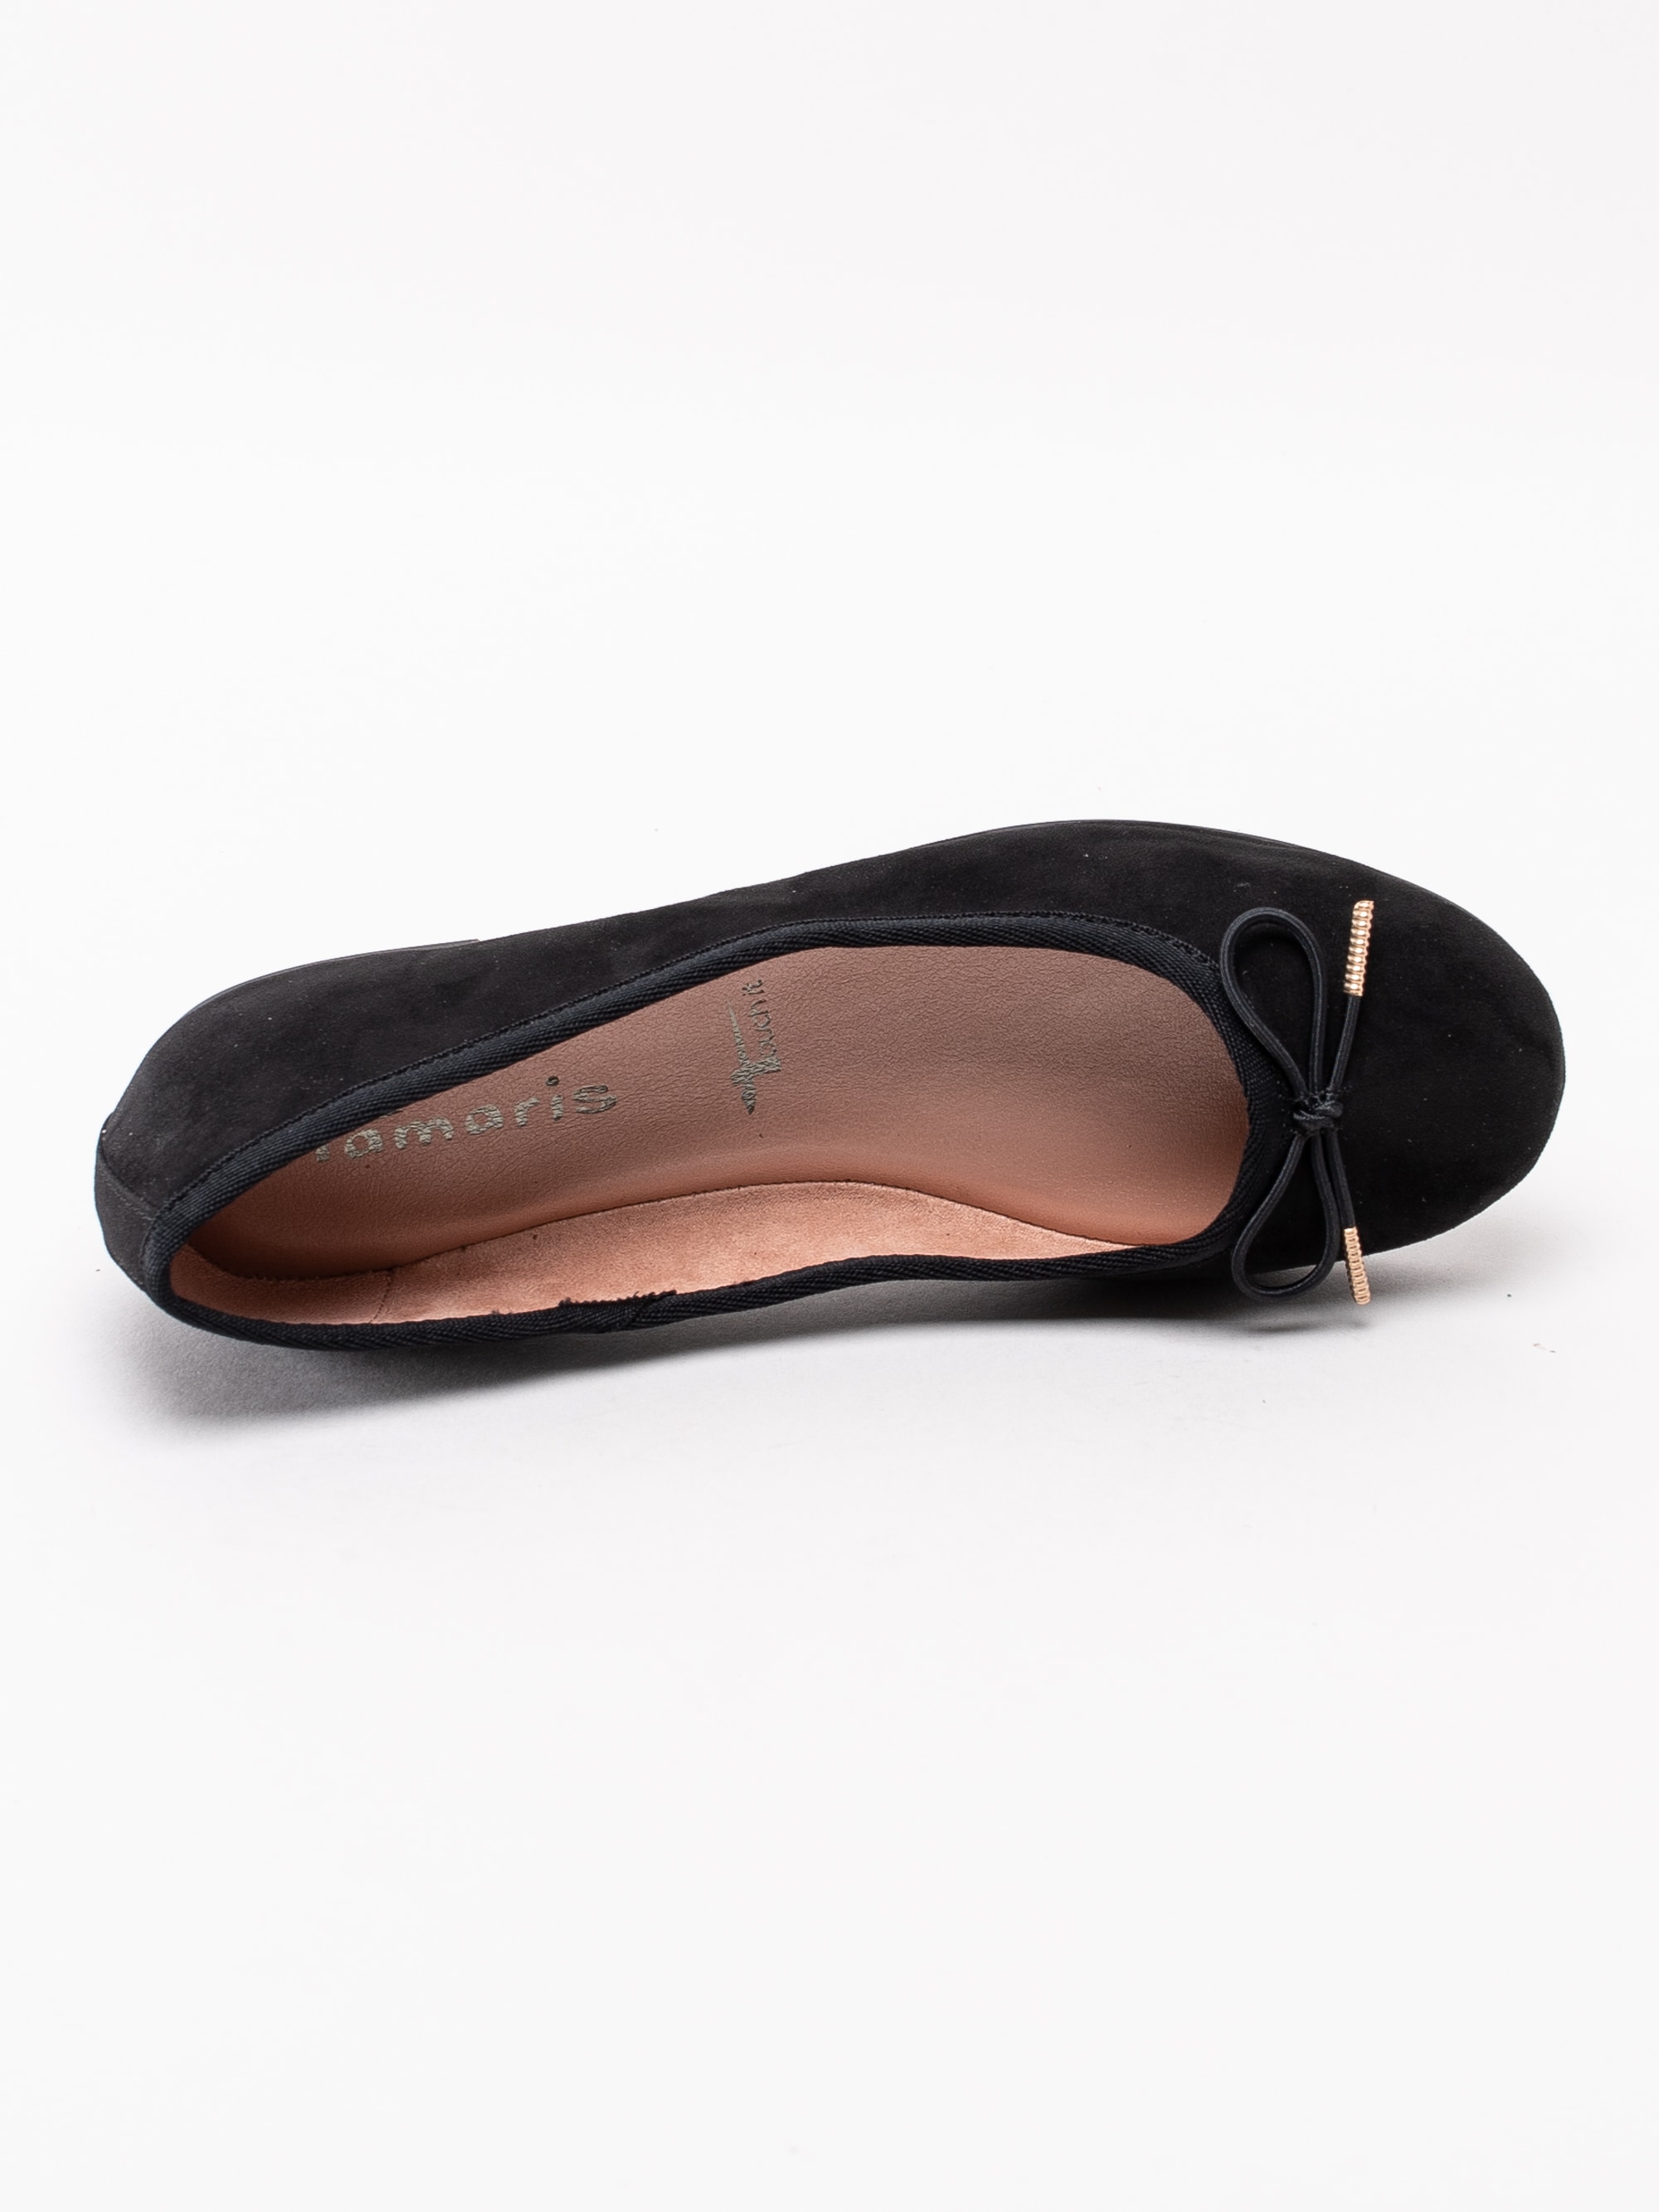 08193036 Tamaris 1-22111-23-001 svarta klassiska ballerina skor med rosett-4